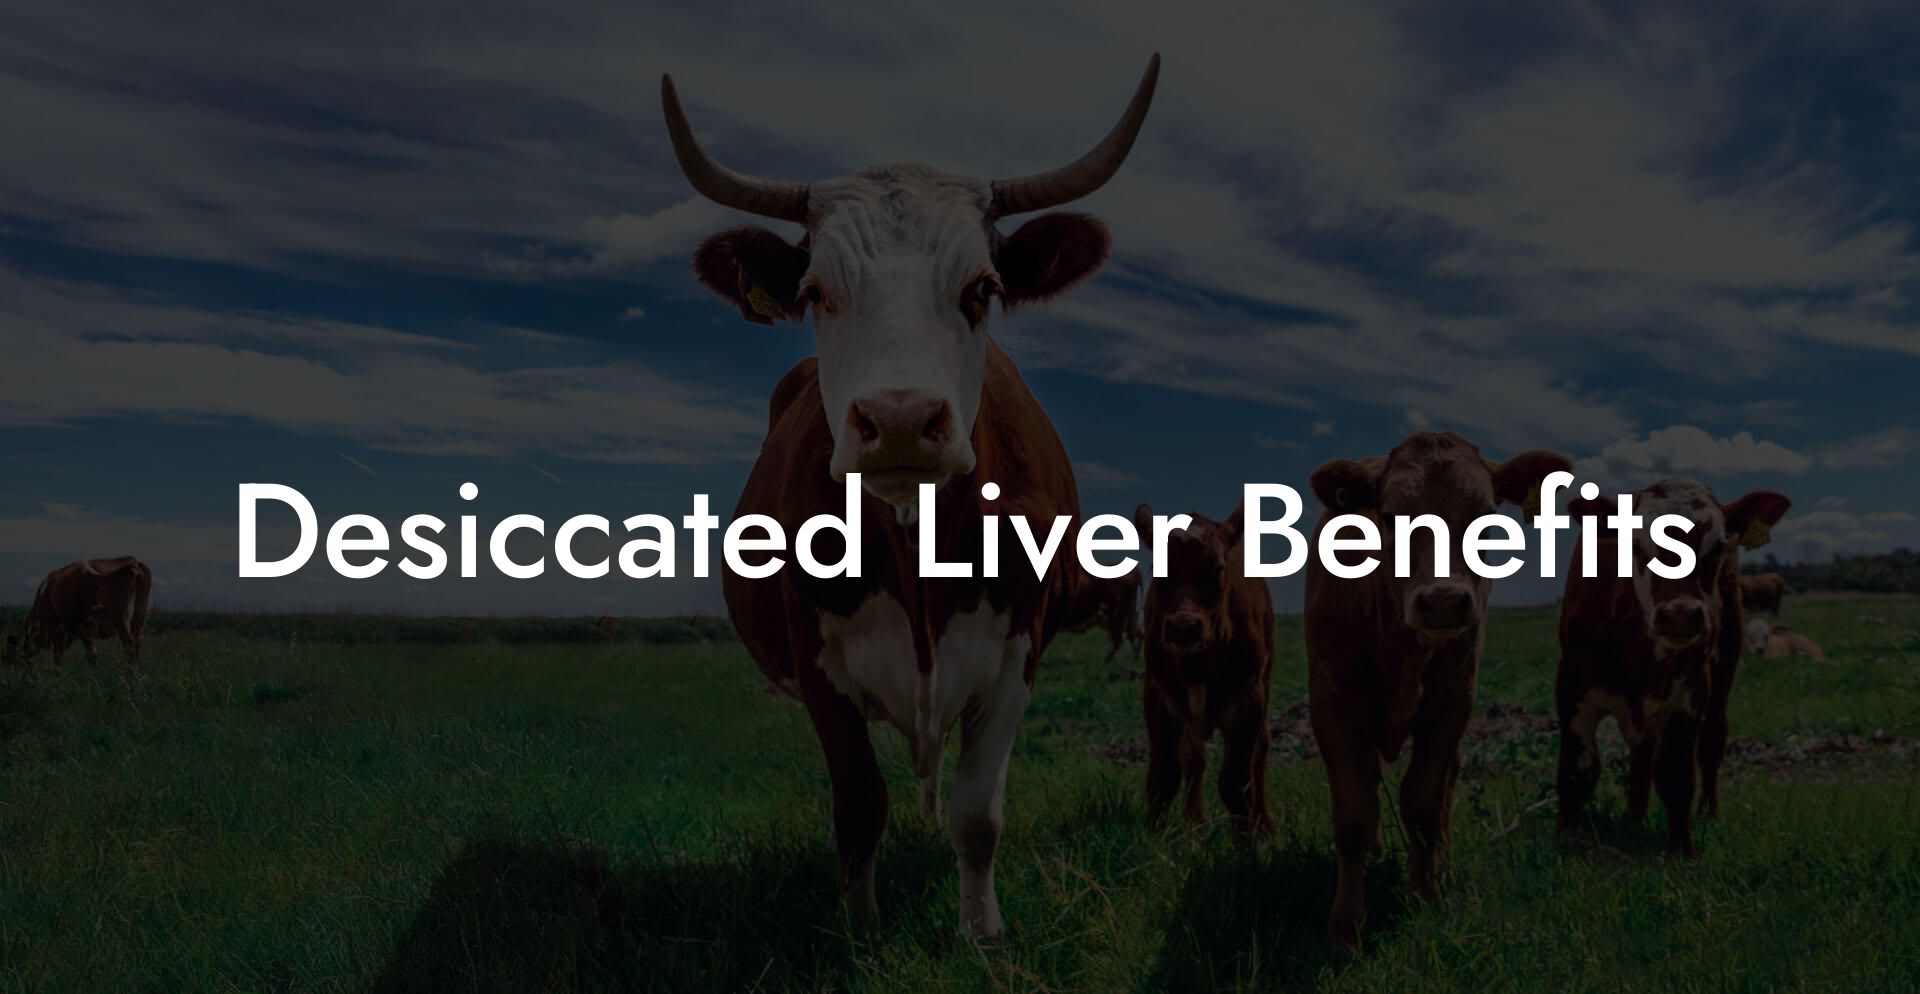 Desiccated Liver Benefits